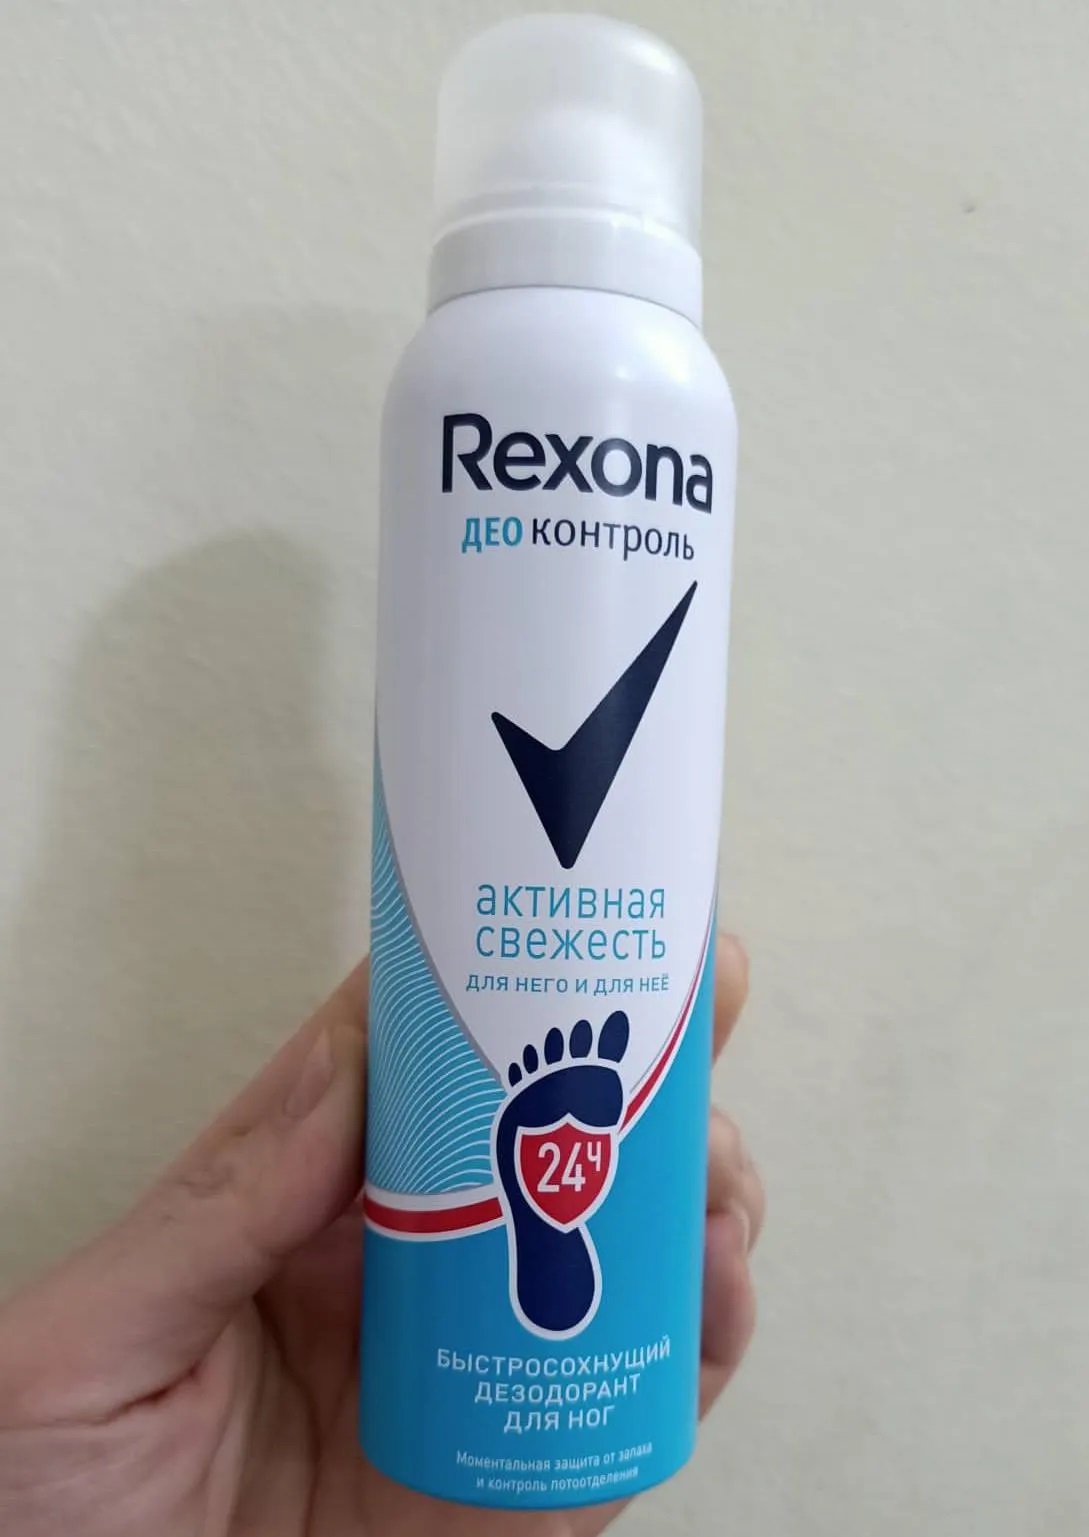 Xịt hỗ trợ khử mùi hôi chân Nga Rexona 3 trong 1 ảnh 1